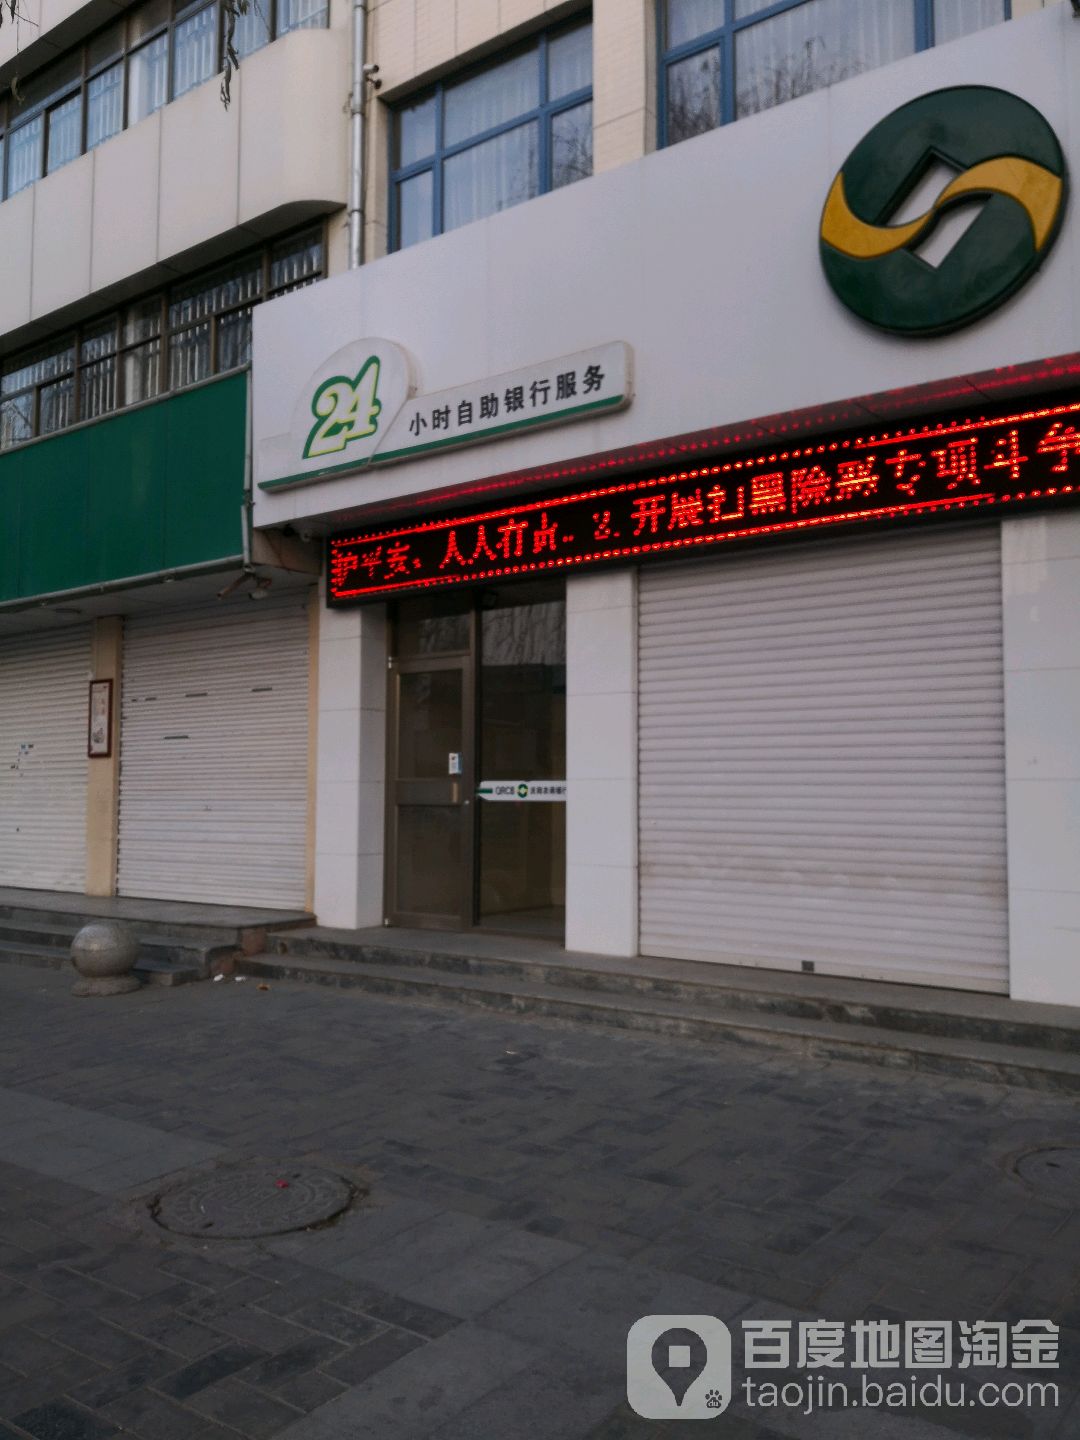 庆阳农商银行24小时自主银行(九龙路)